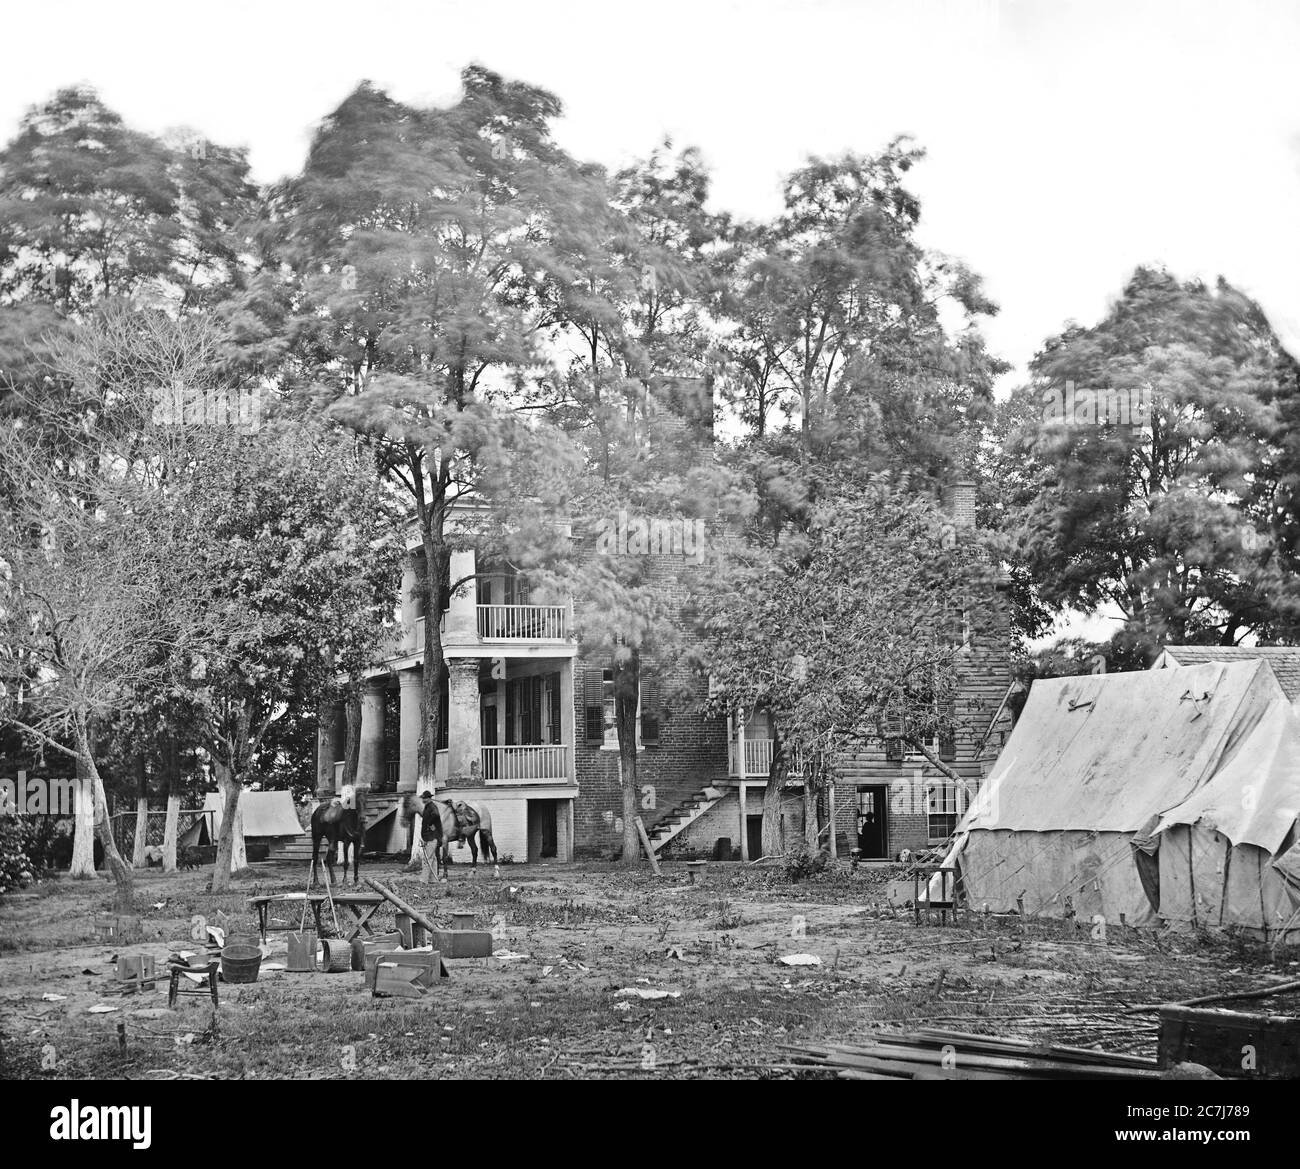 Casa utilizzata come sede dal Gen. G.B. McClellan e il Gen. P.G.T. Beauregard durante la guerra civile americana, Fairfax Court House, Virginia, USA, 1863 Foto Stock